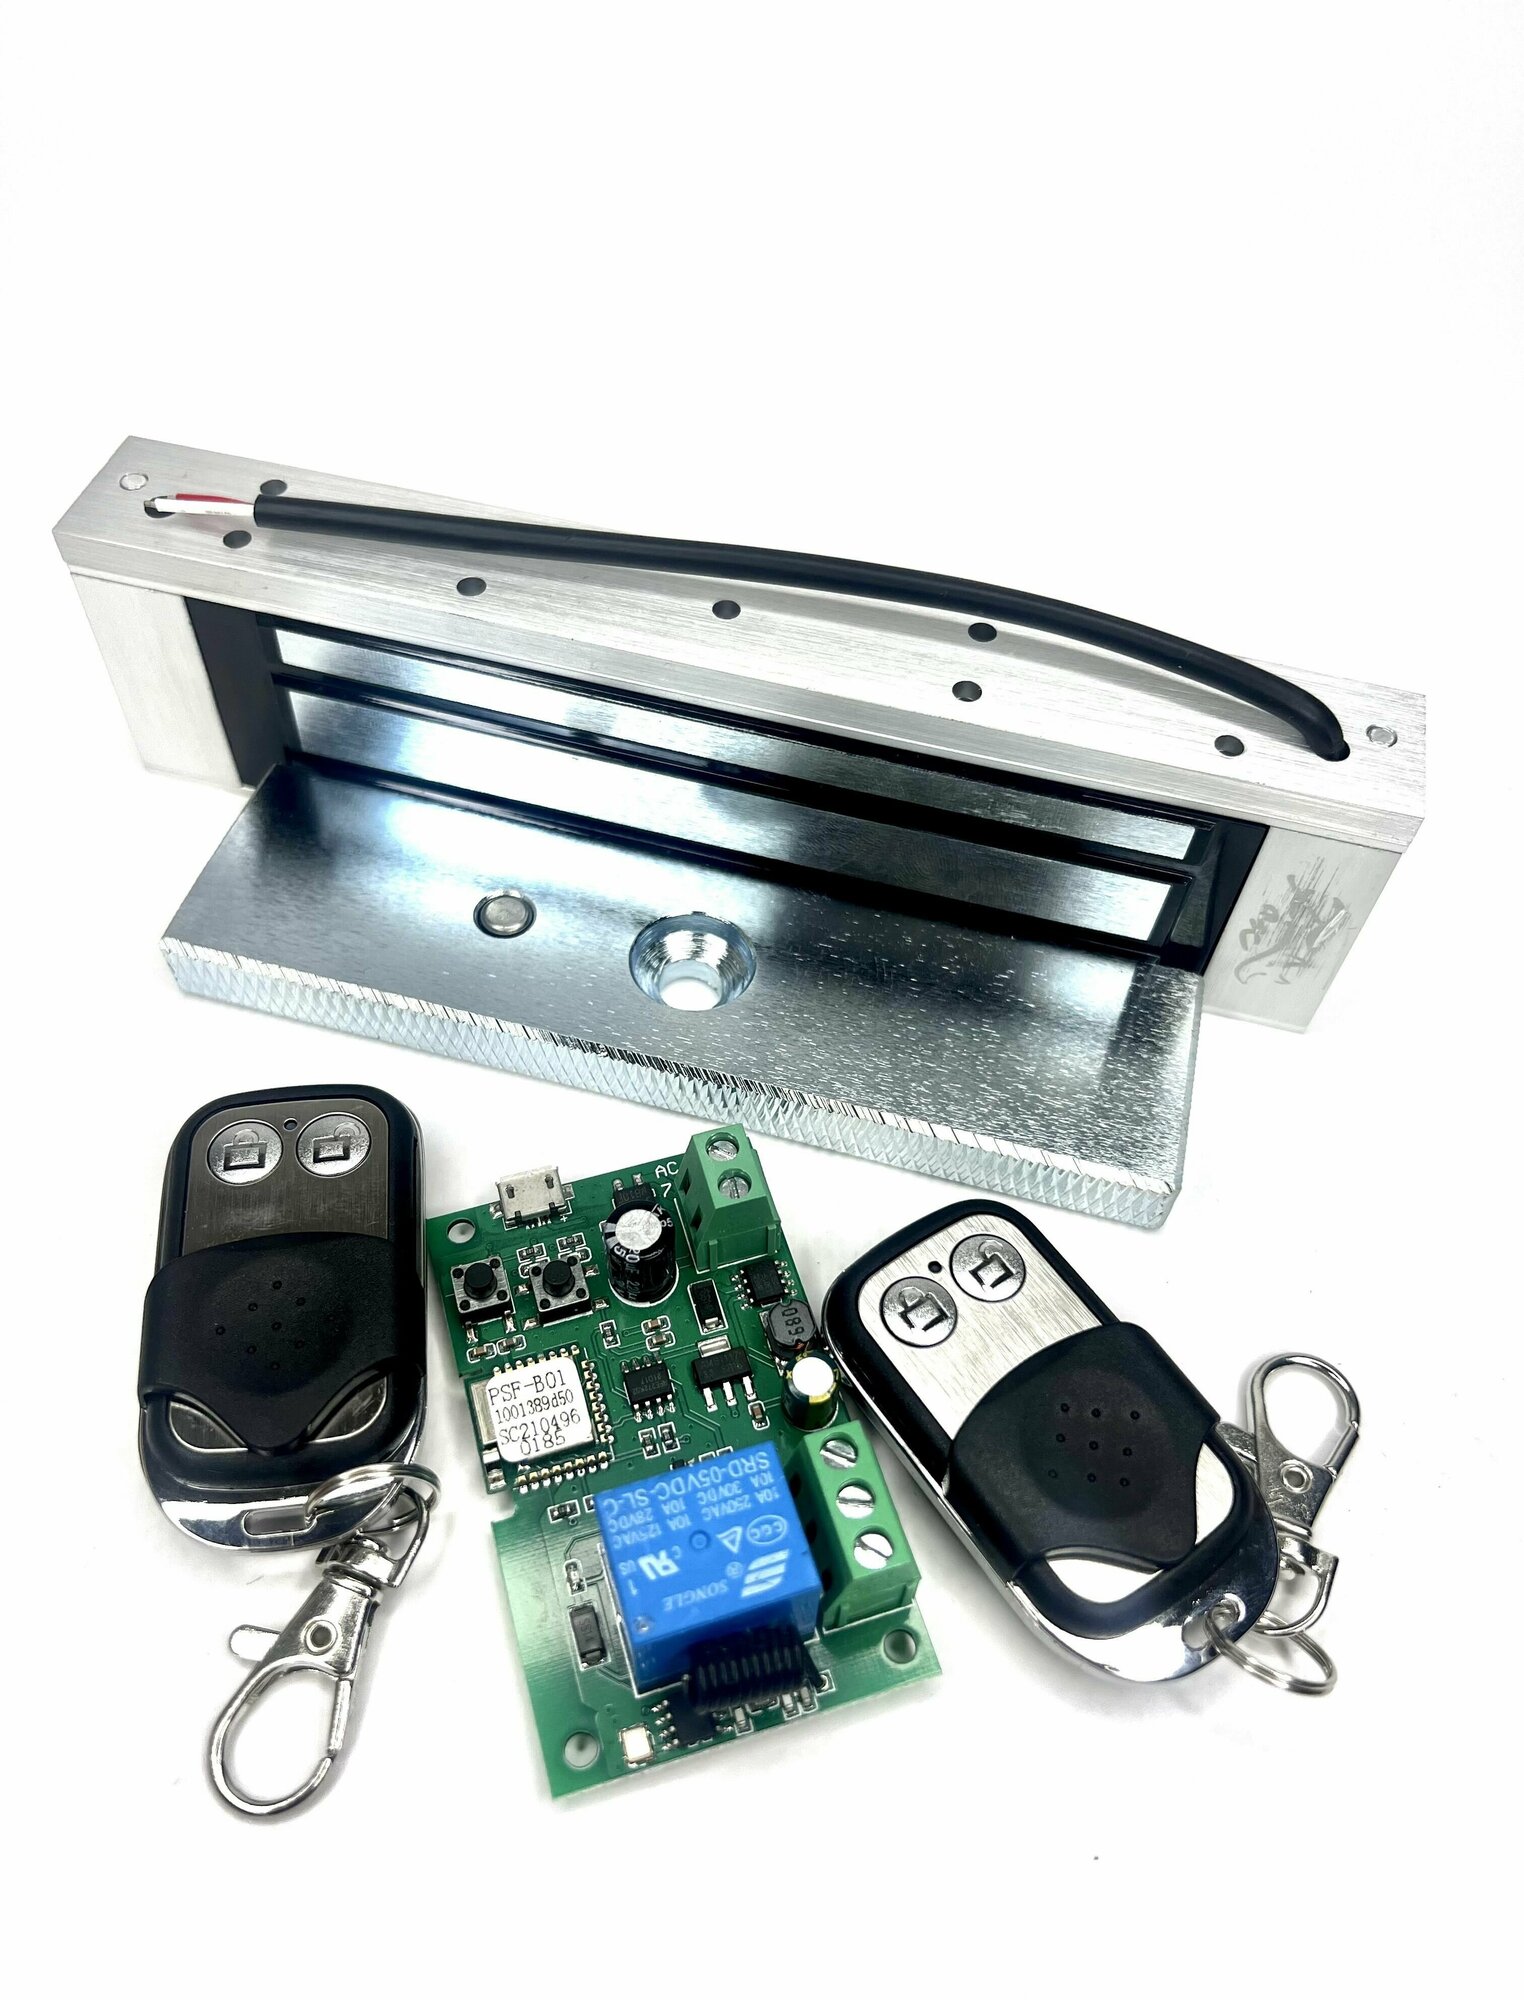 Электромагнитный замок на дверь с Wi-Fi приложением (Ewelink) + 2 радио брелка